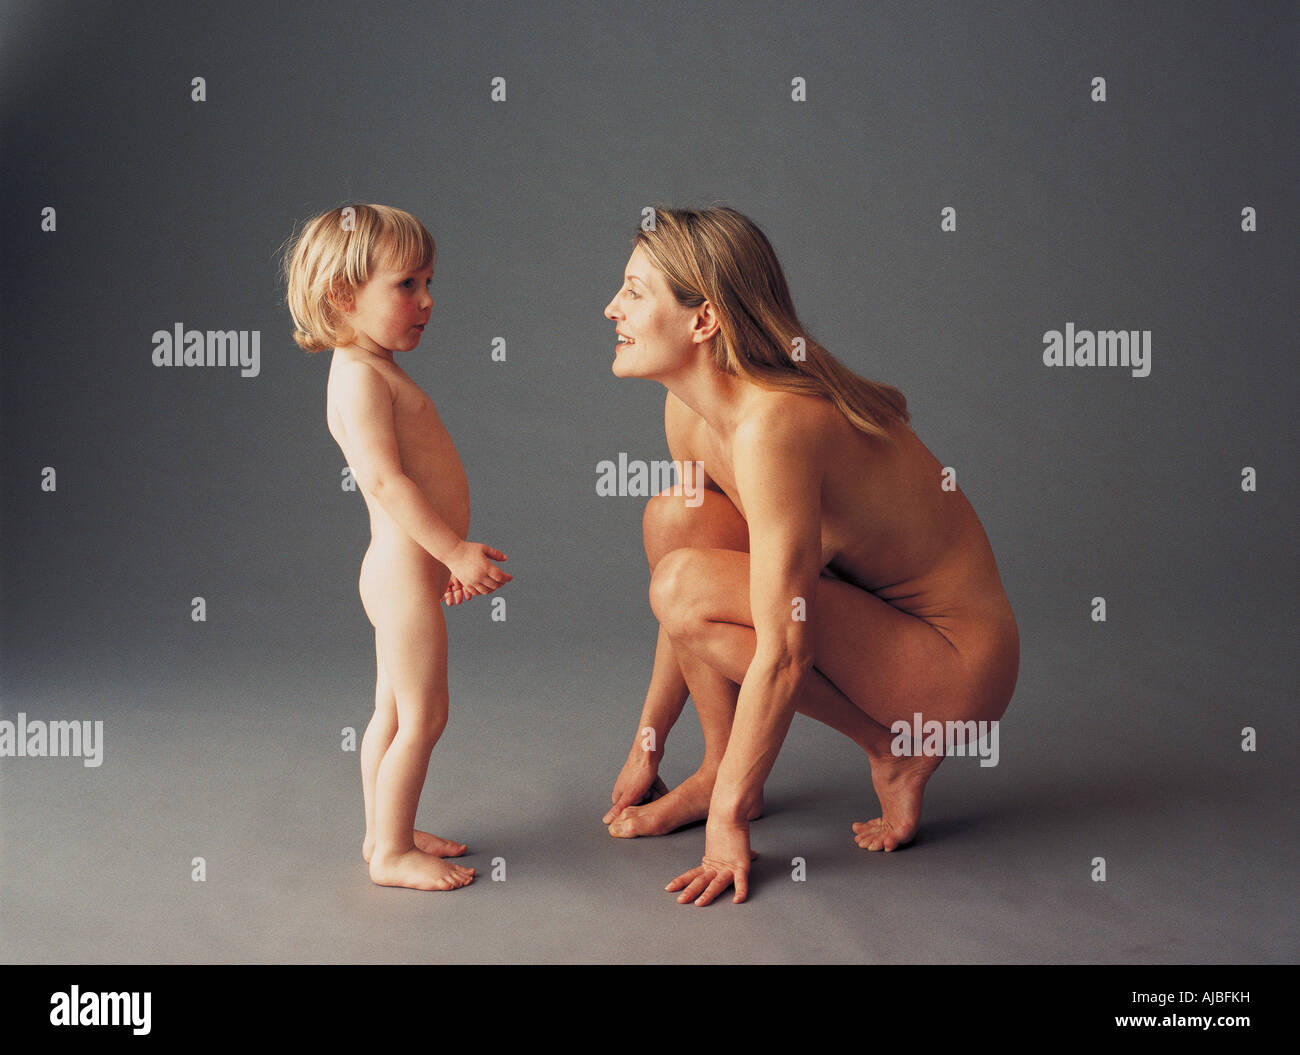 Imagen desnuda de la madre y del hijo bebé jugando Fotografía de stock -  Alamy